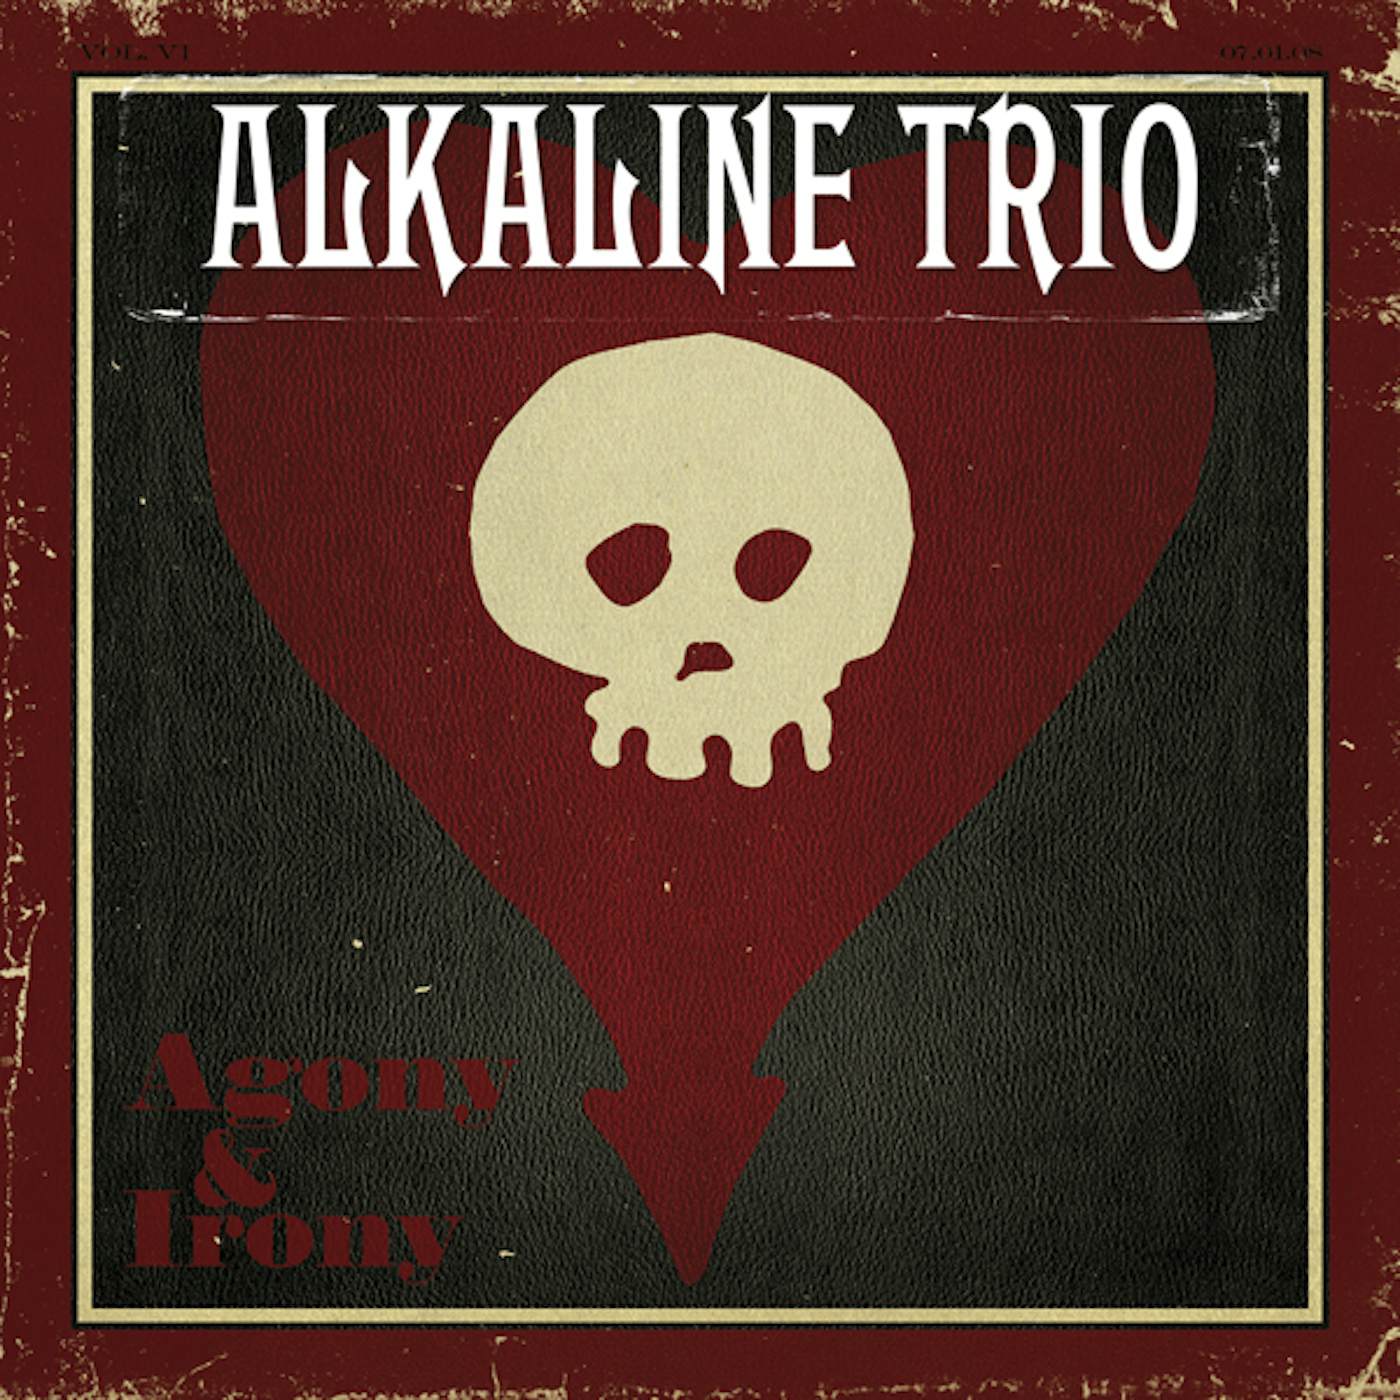 Alkaline Trio AGONY & IRONY CD